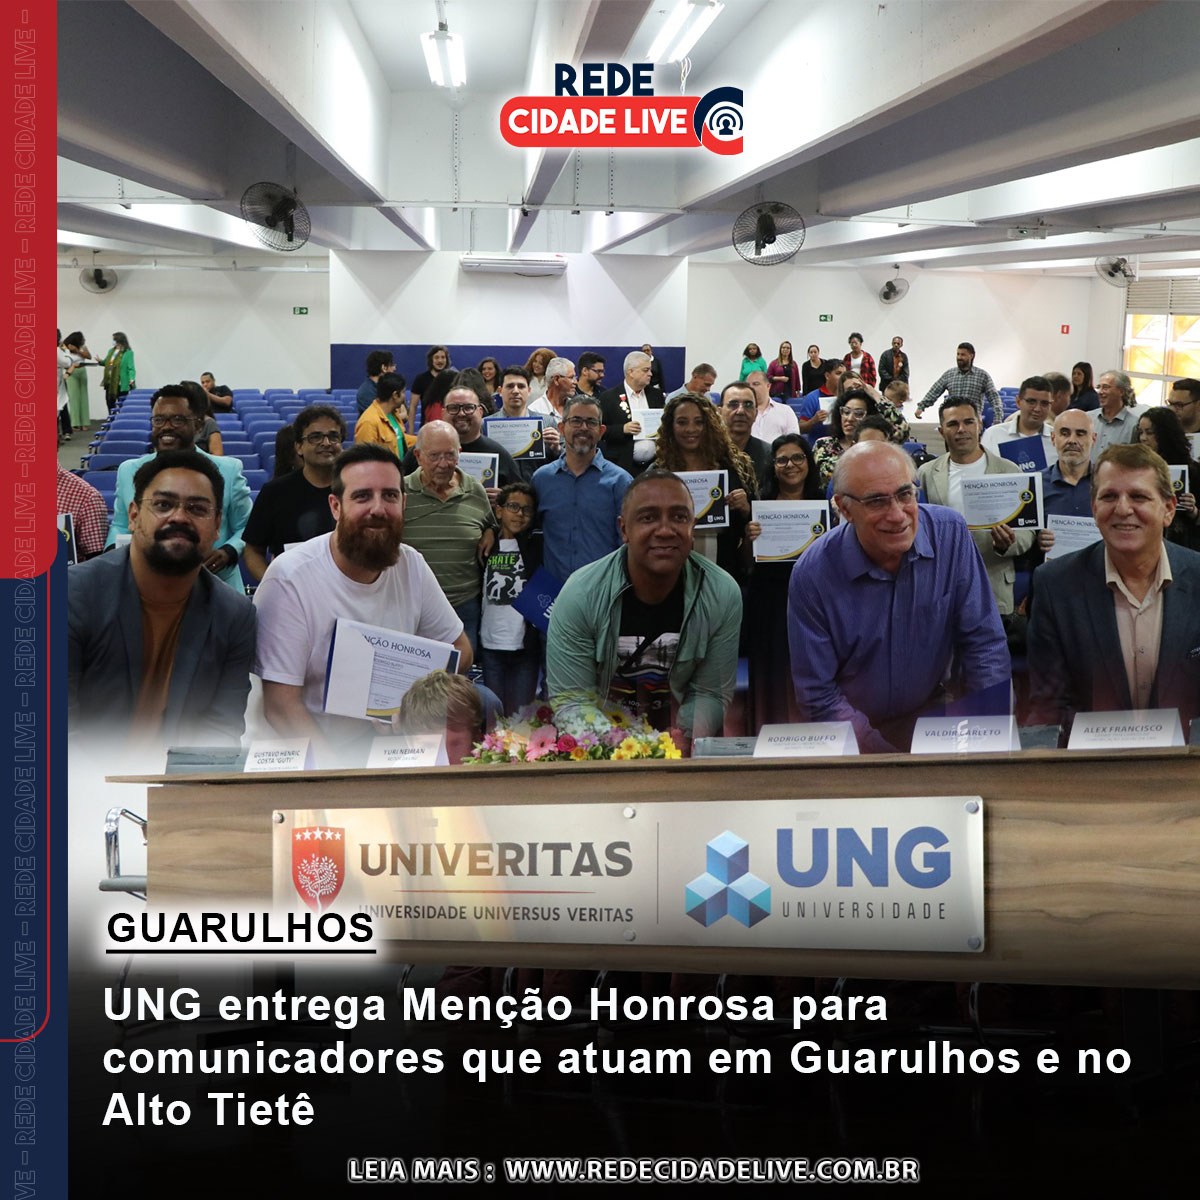 UNG entrega Menção Honrosa para comunicadores que atuam em Guarulhos e no  alto tietê.